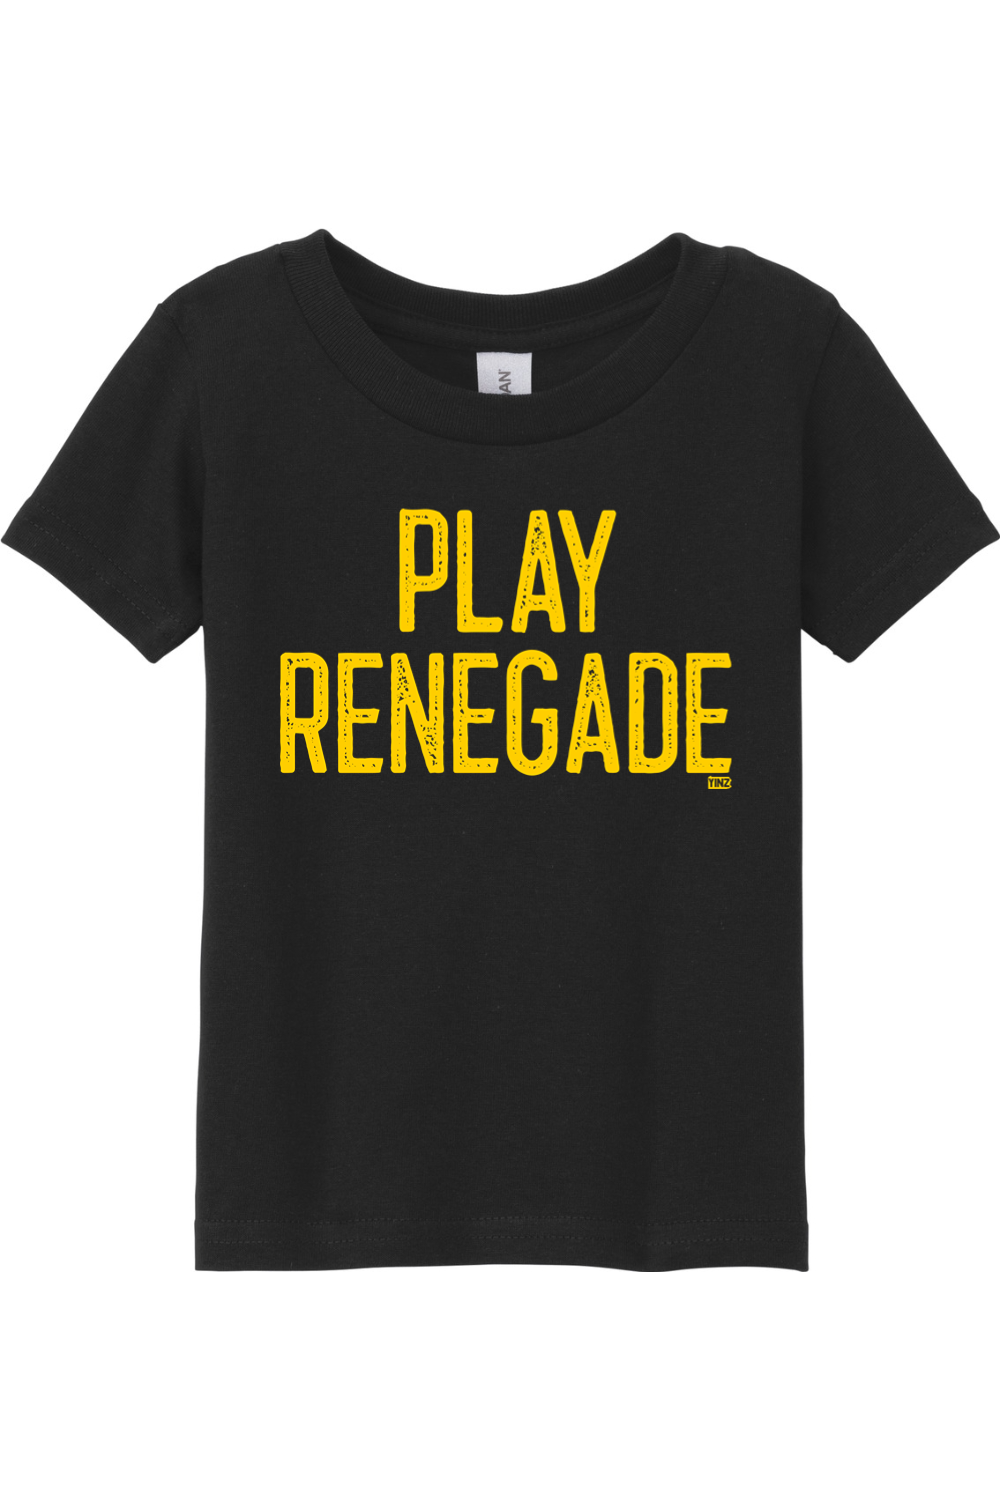 Play Renegade - Toddler T-Shirt - Yinzylvania